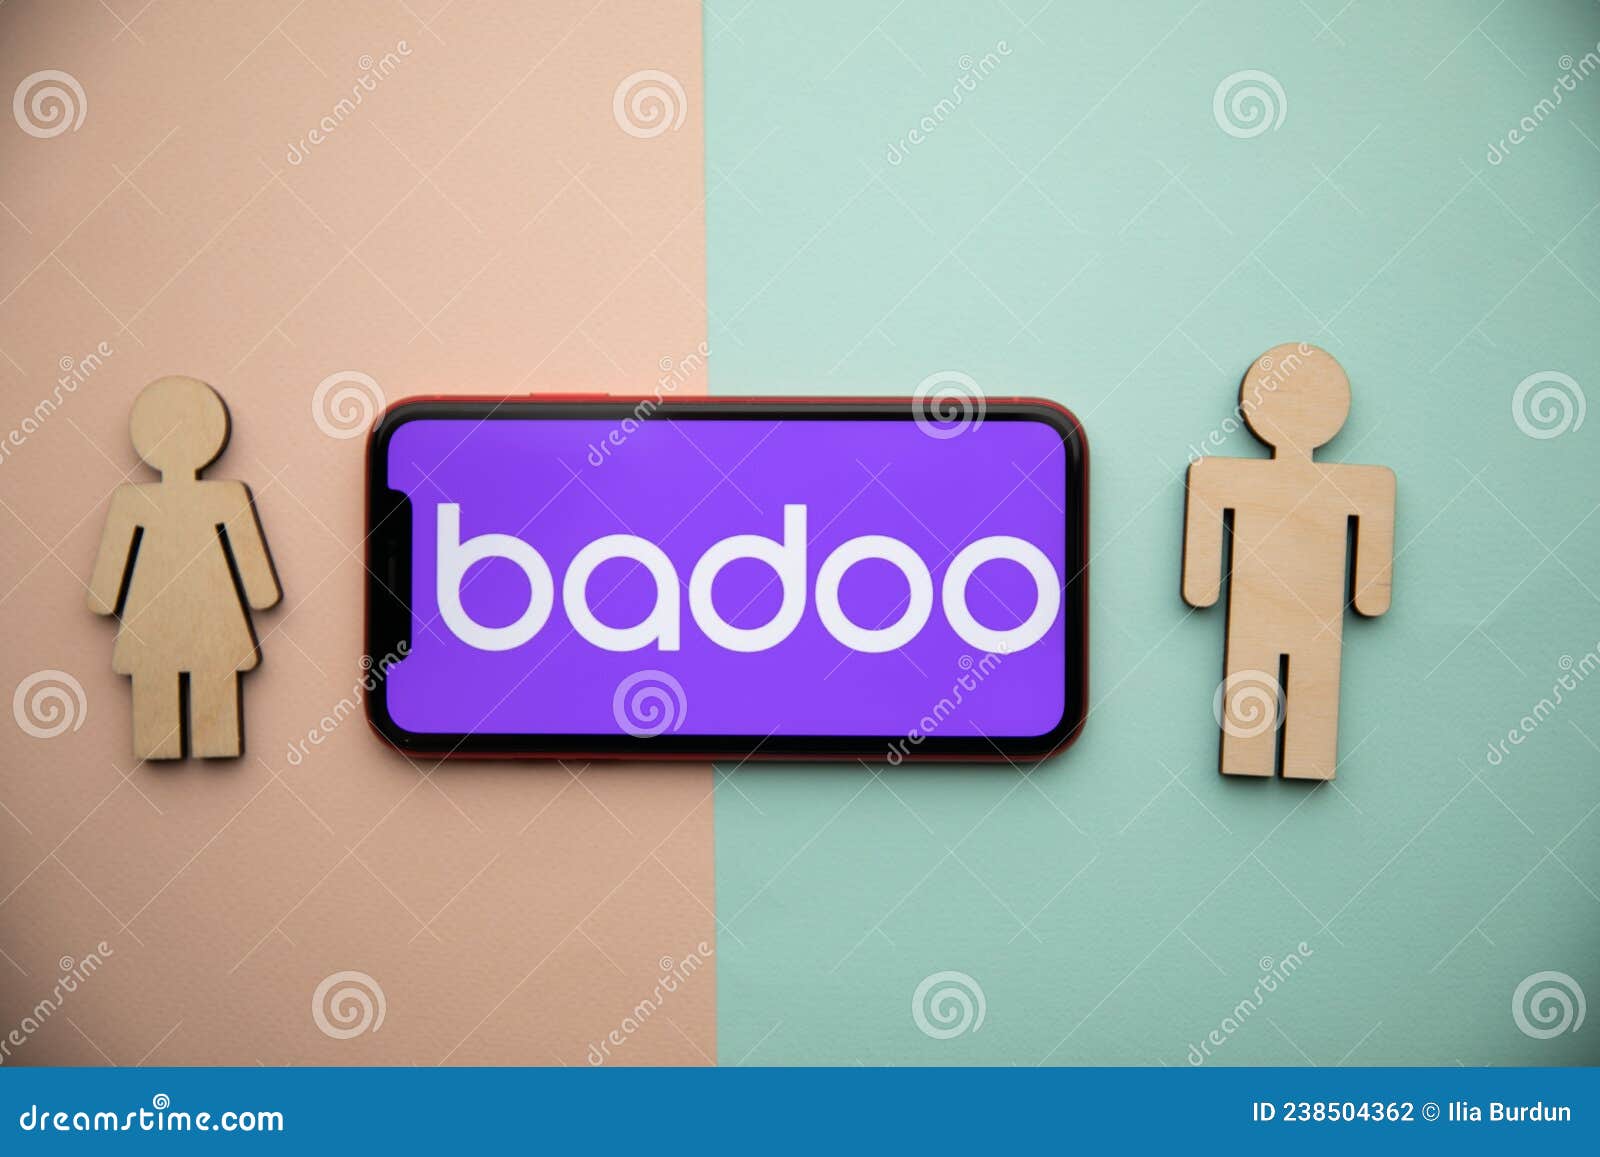 Browse badoo Badoo